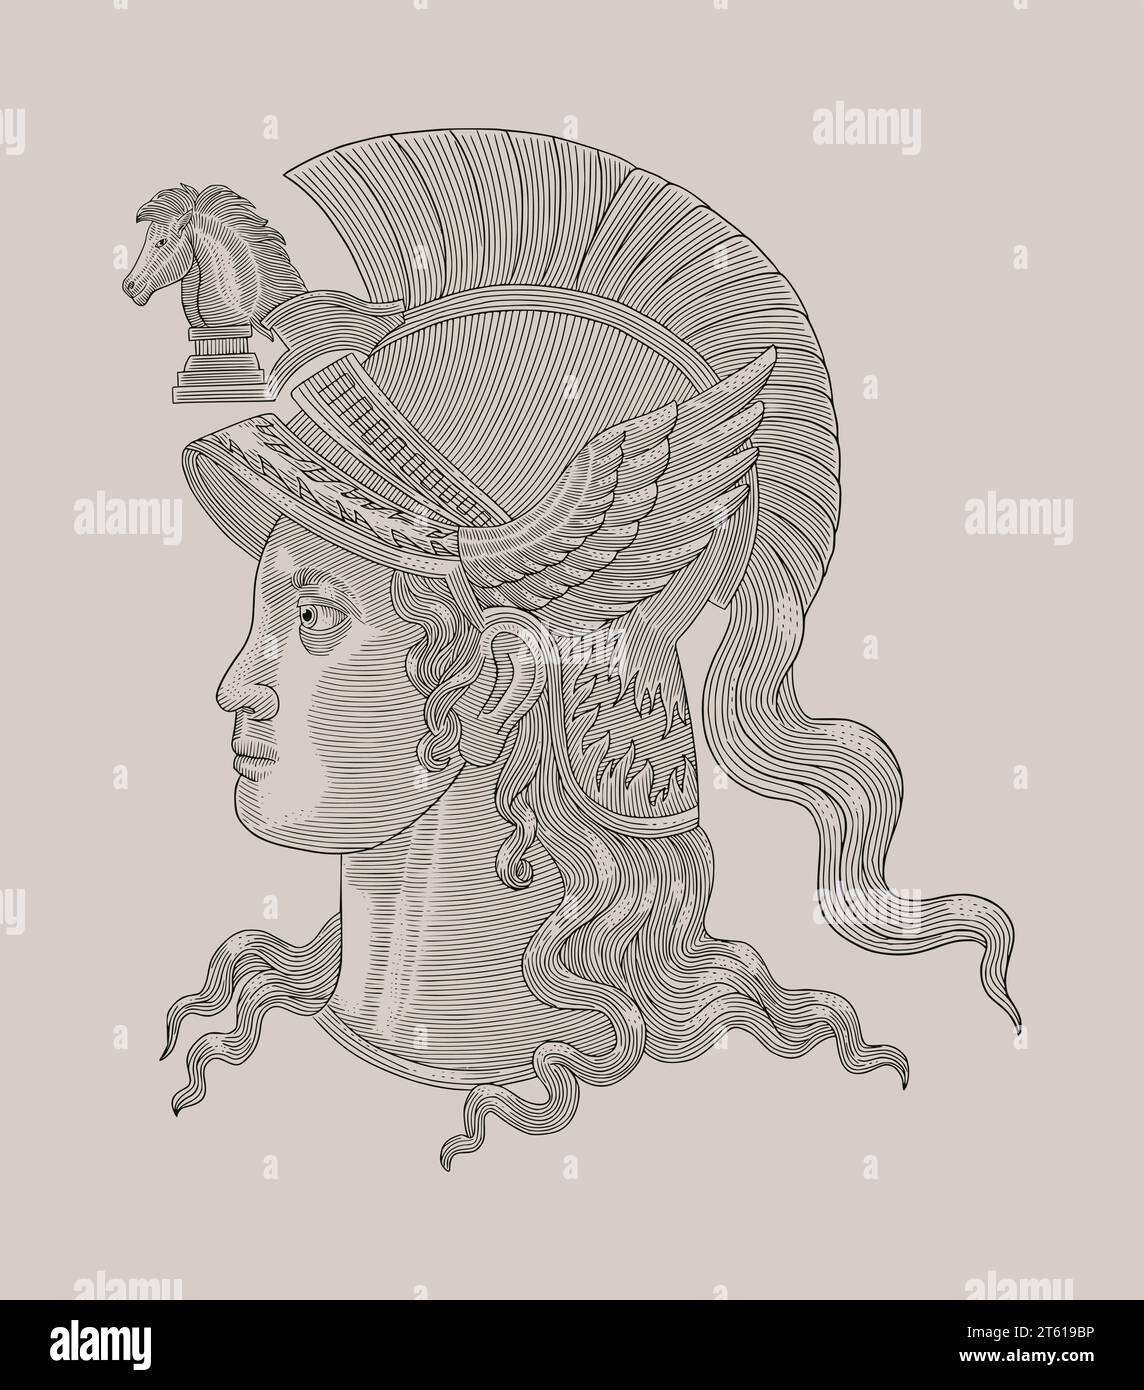 Diosa atenea de griego romano, ilustración de estilo de dibujo grabado vintage Ilustración del Vector